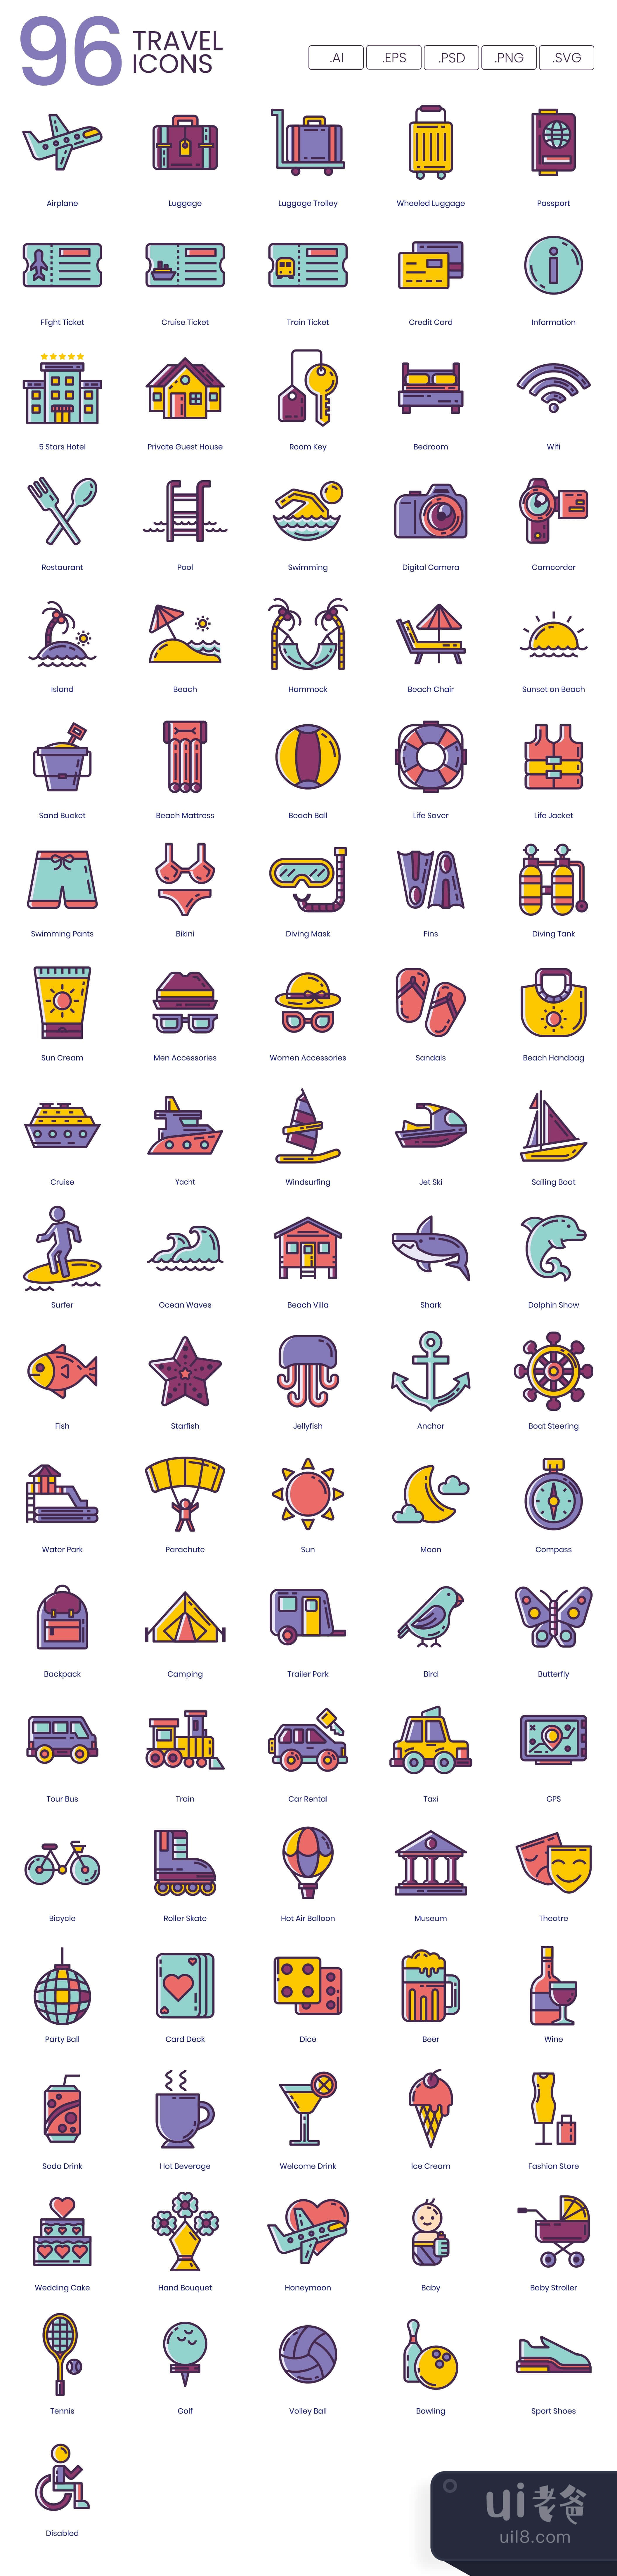 96个旅游图标丁香系列 (96 Travel Icons  Lilac Series)插图